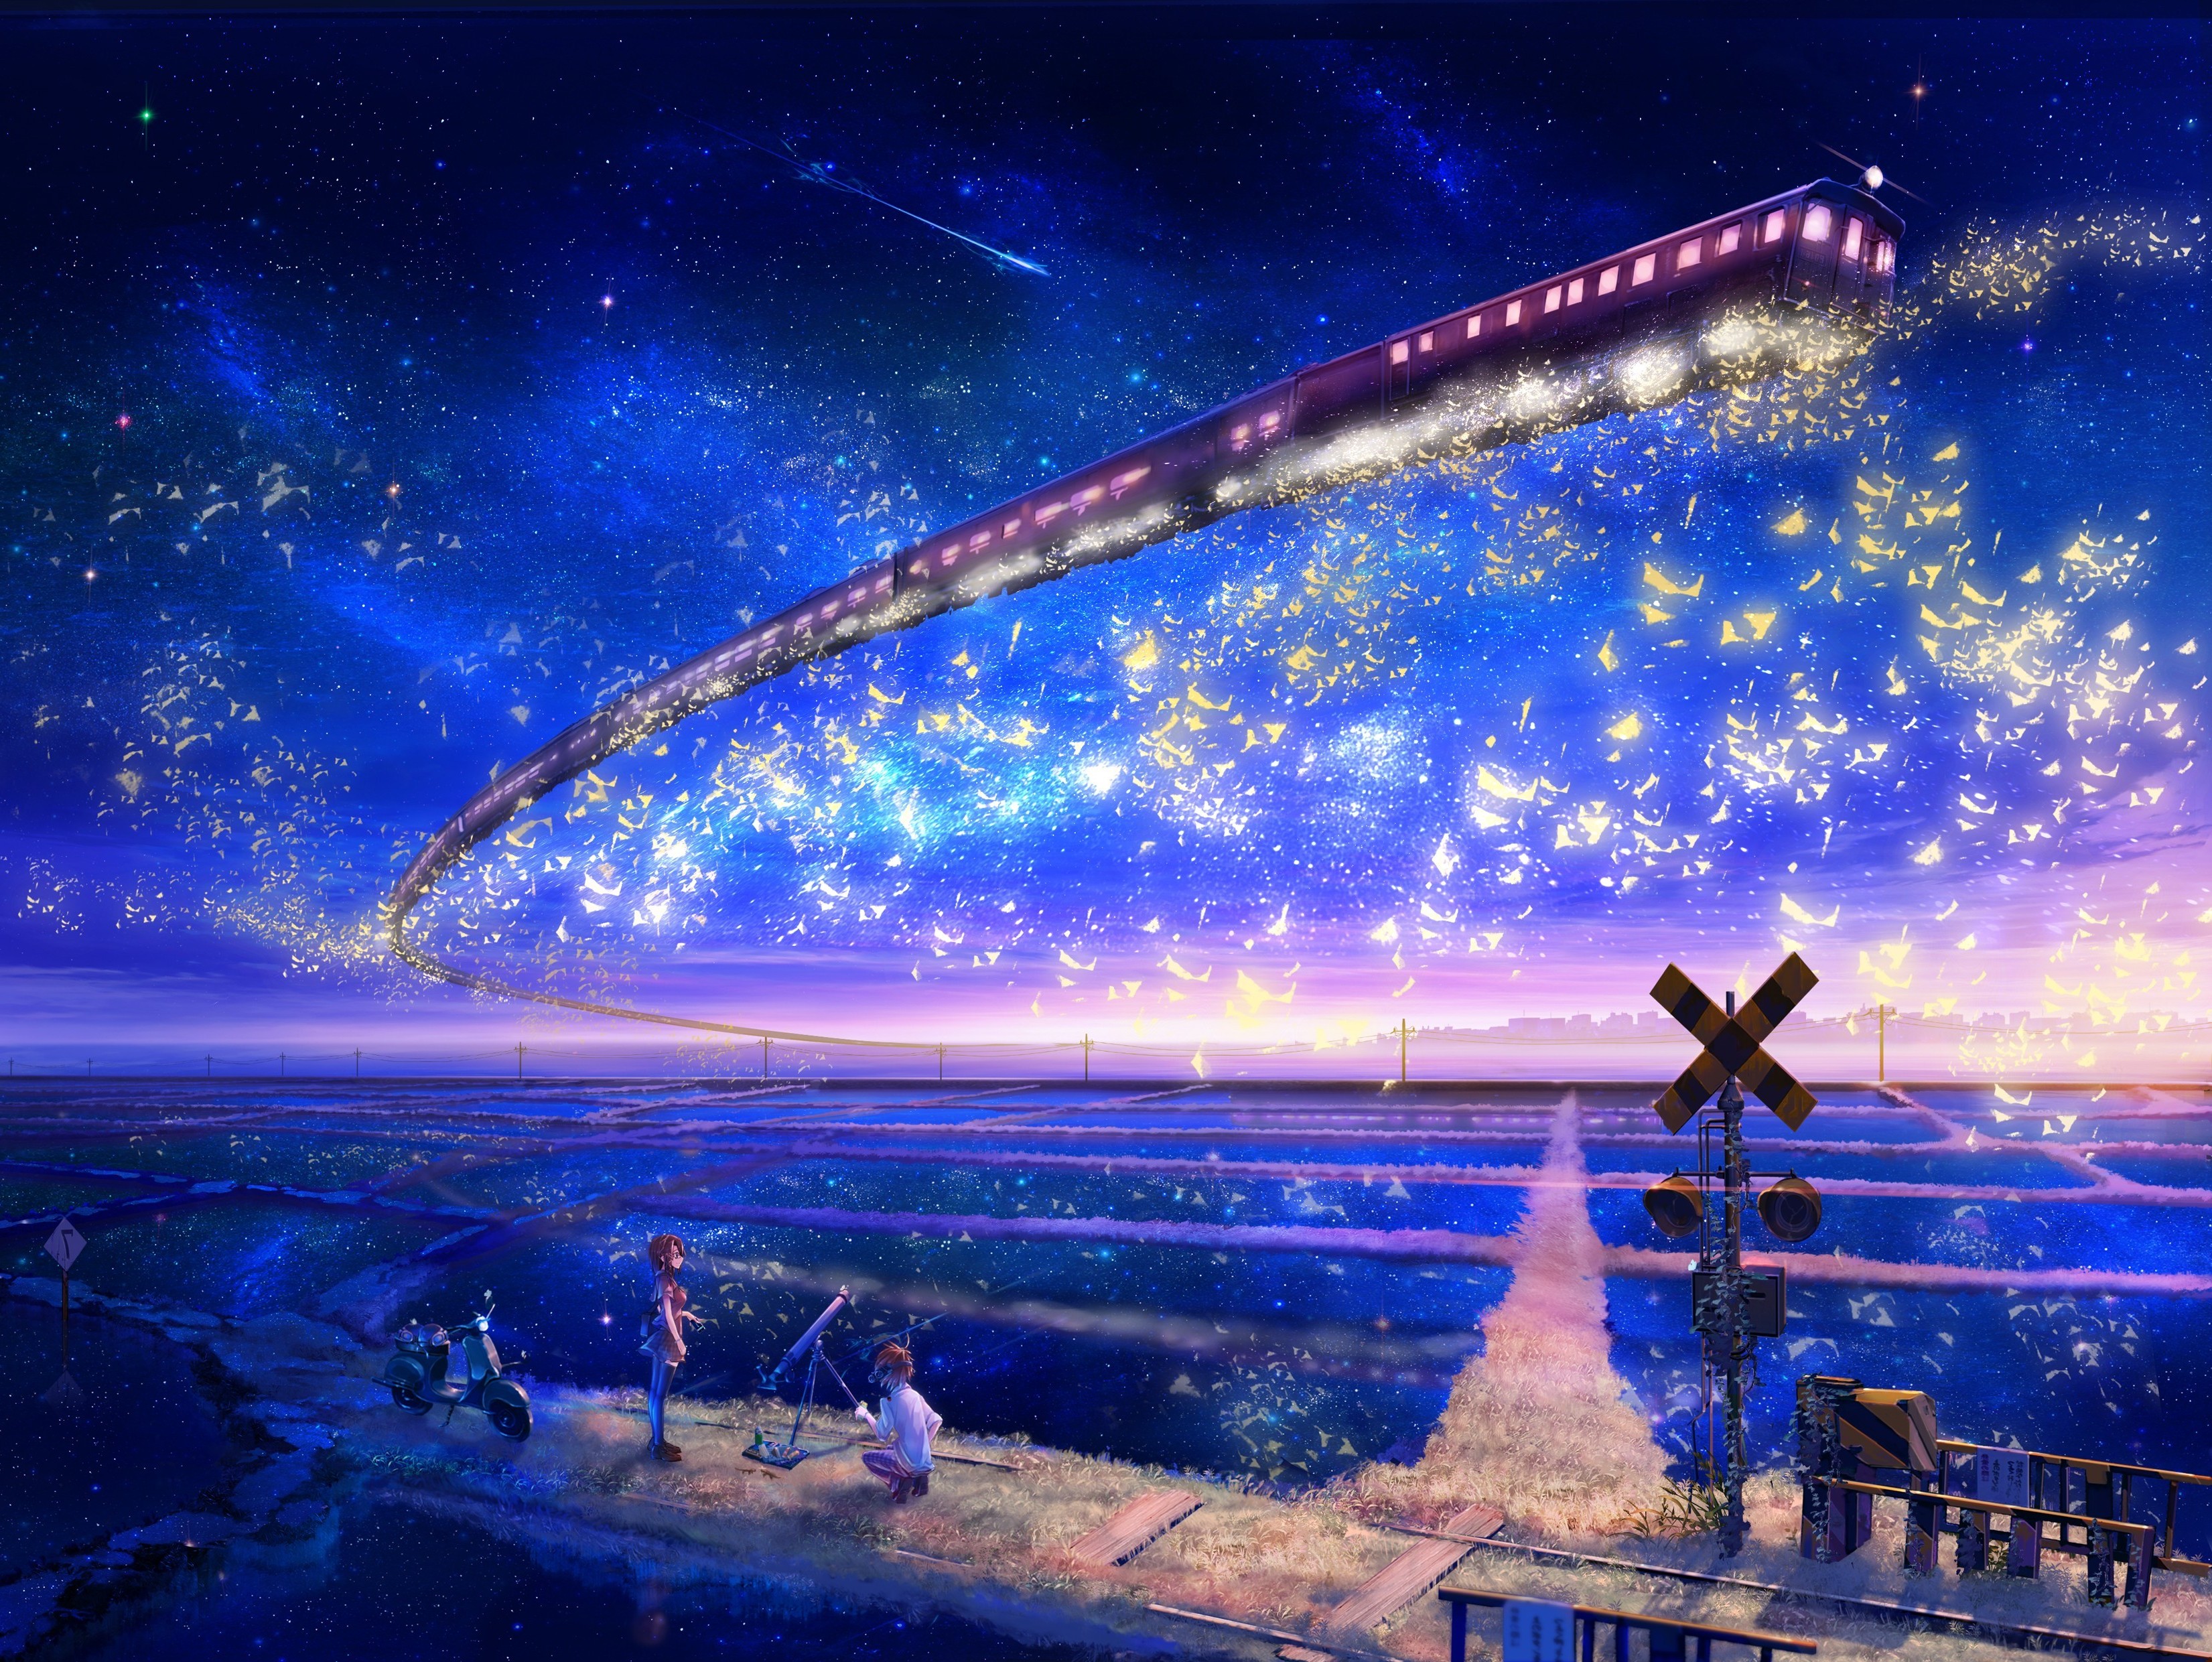 night anime wallpaper,sky,atmosphere,cg artwork,space,horizon